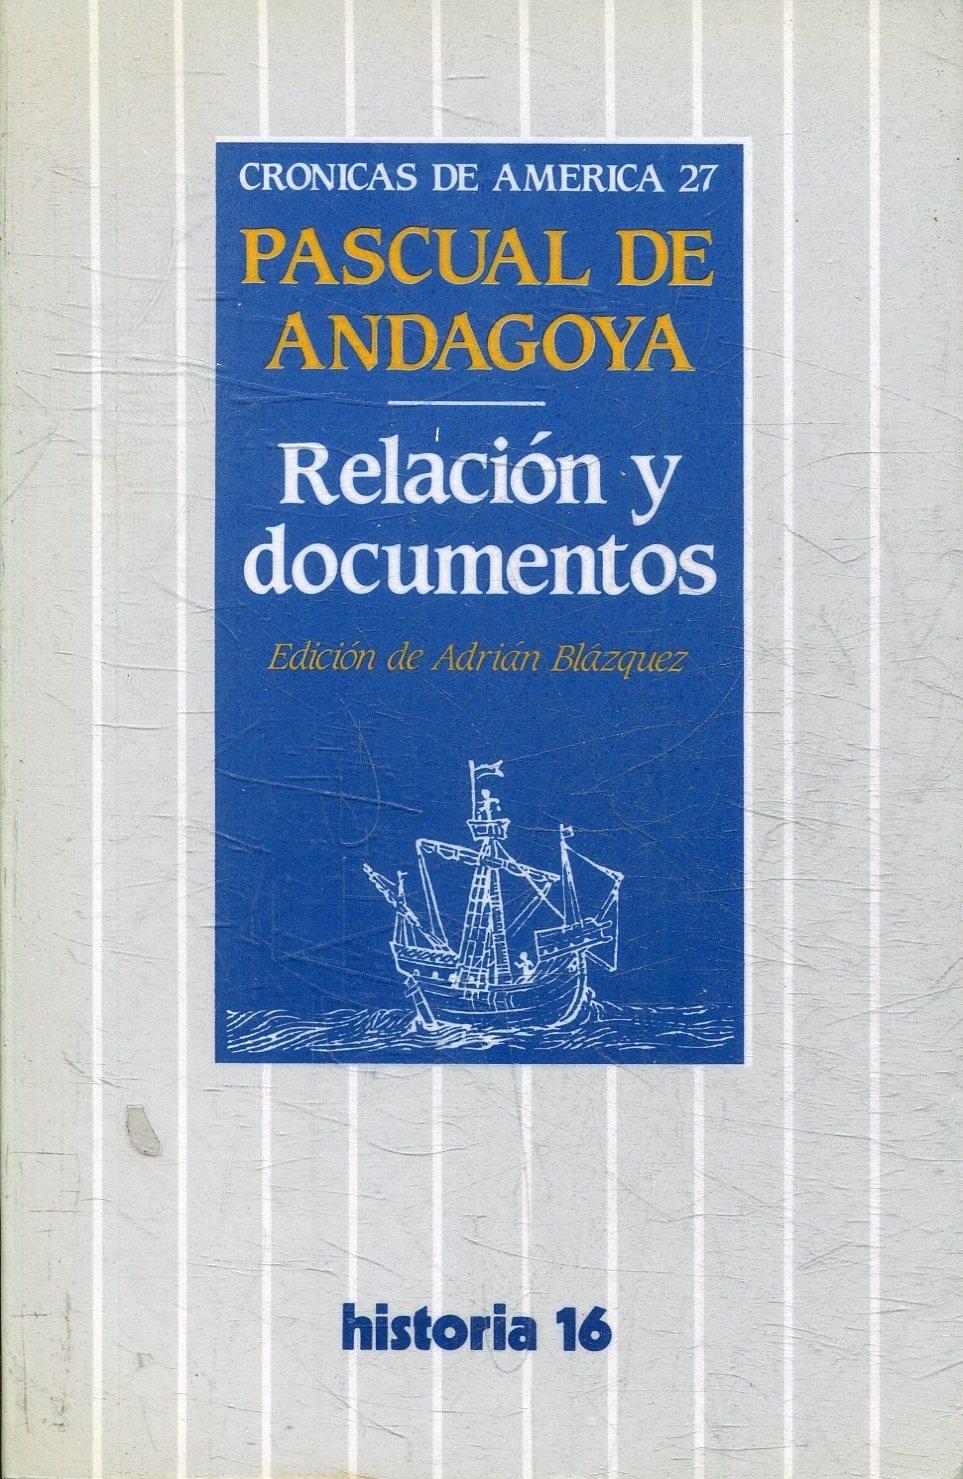 Relación y Documentos "(Pascual de Andagoya)"